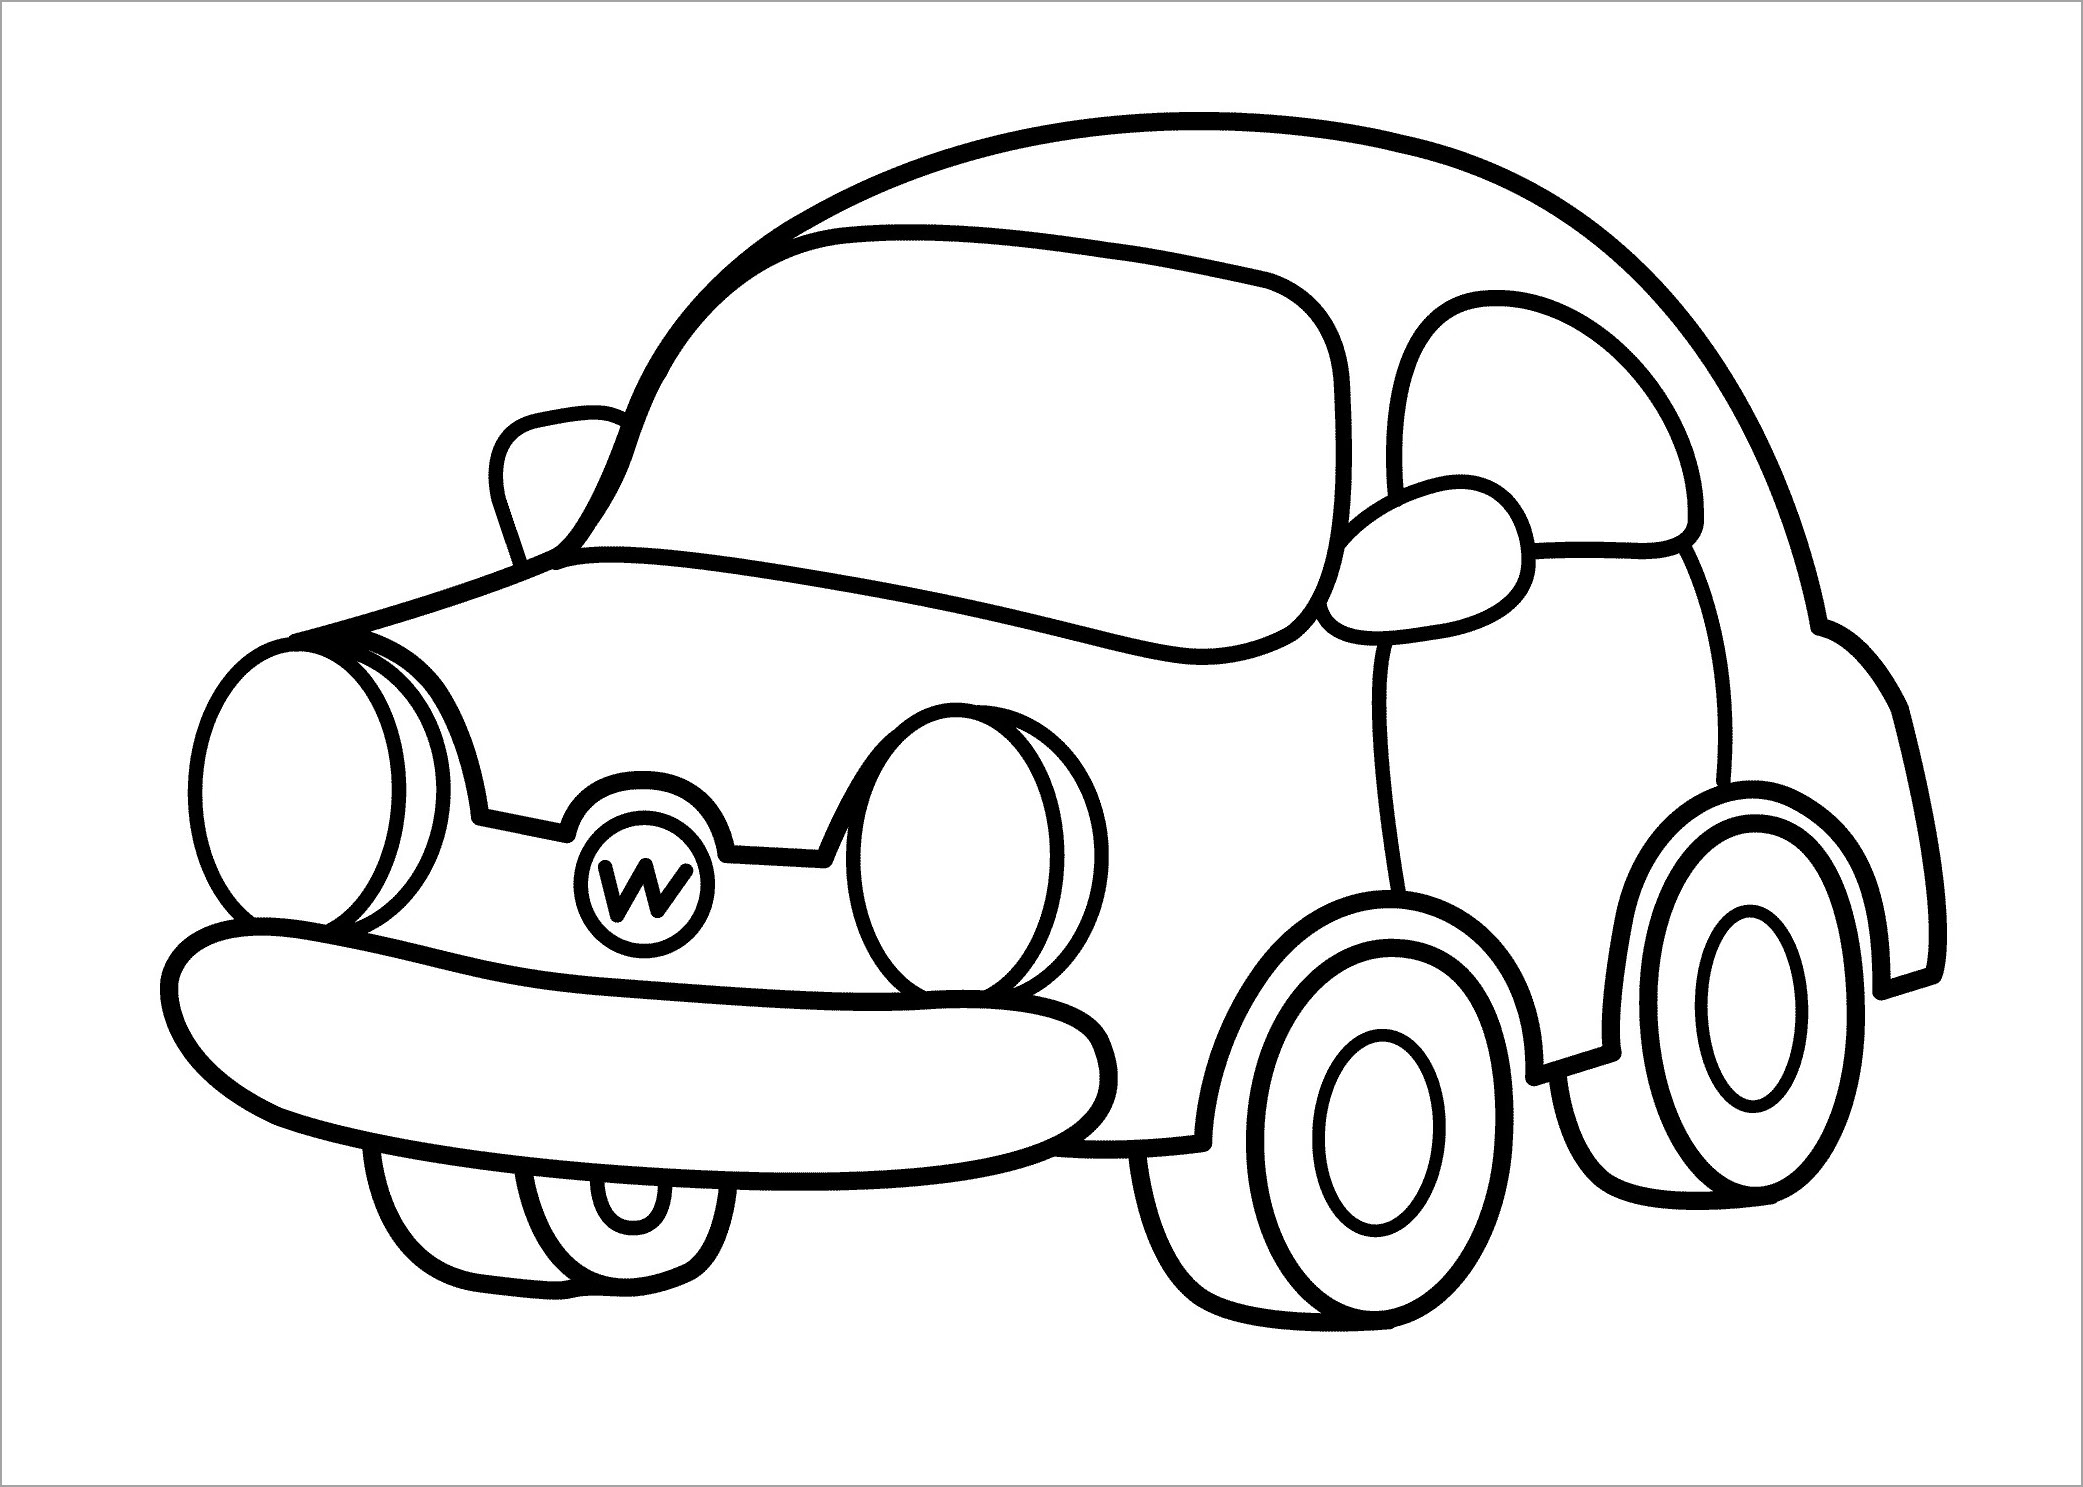 Vẽ xe Ô tôHow to Draw Car  YouTube